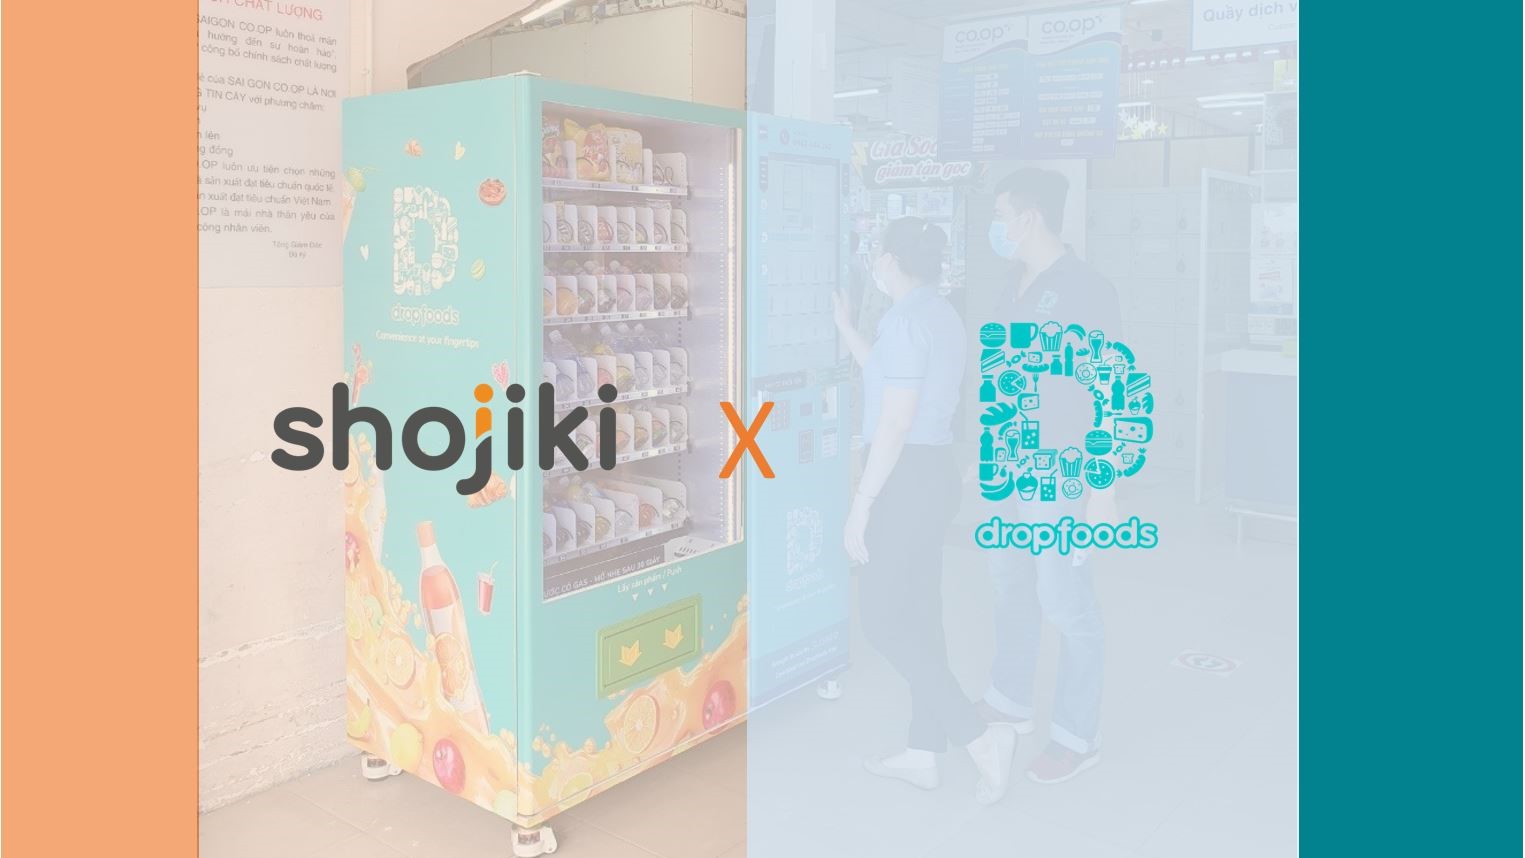 shojiki hợp tác với dropfoods quảng cáo trên máy bán hàng tự động